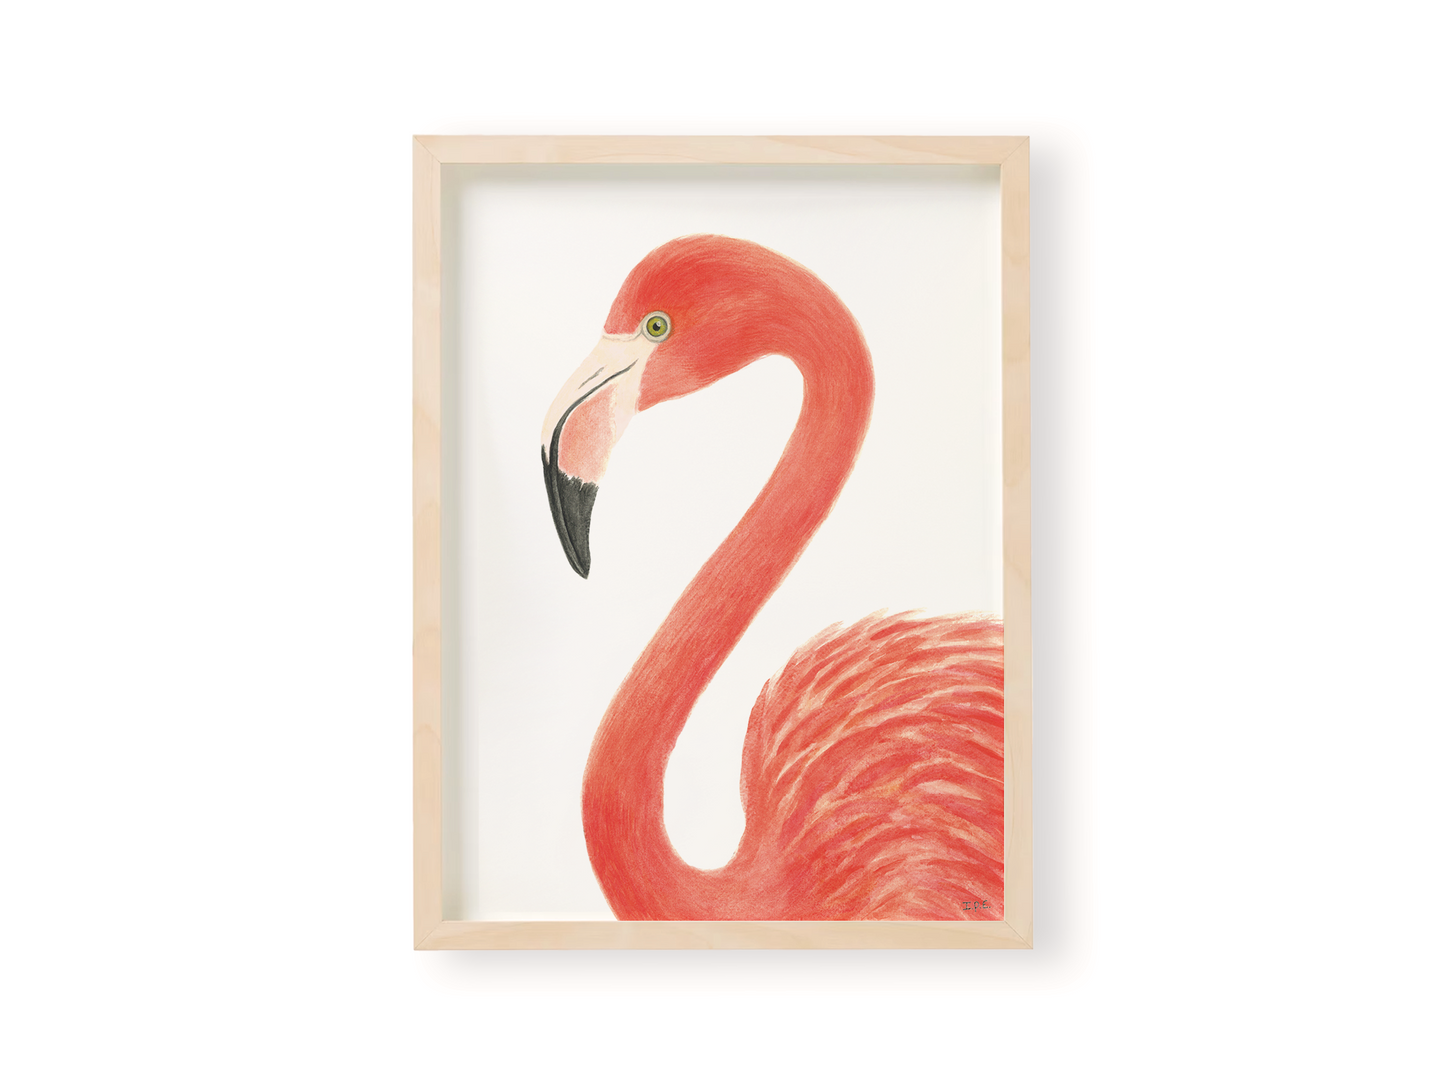 Flamingo Prints